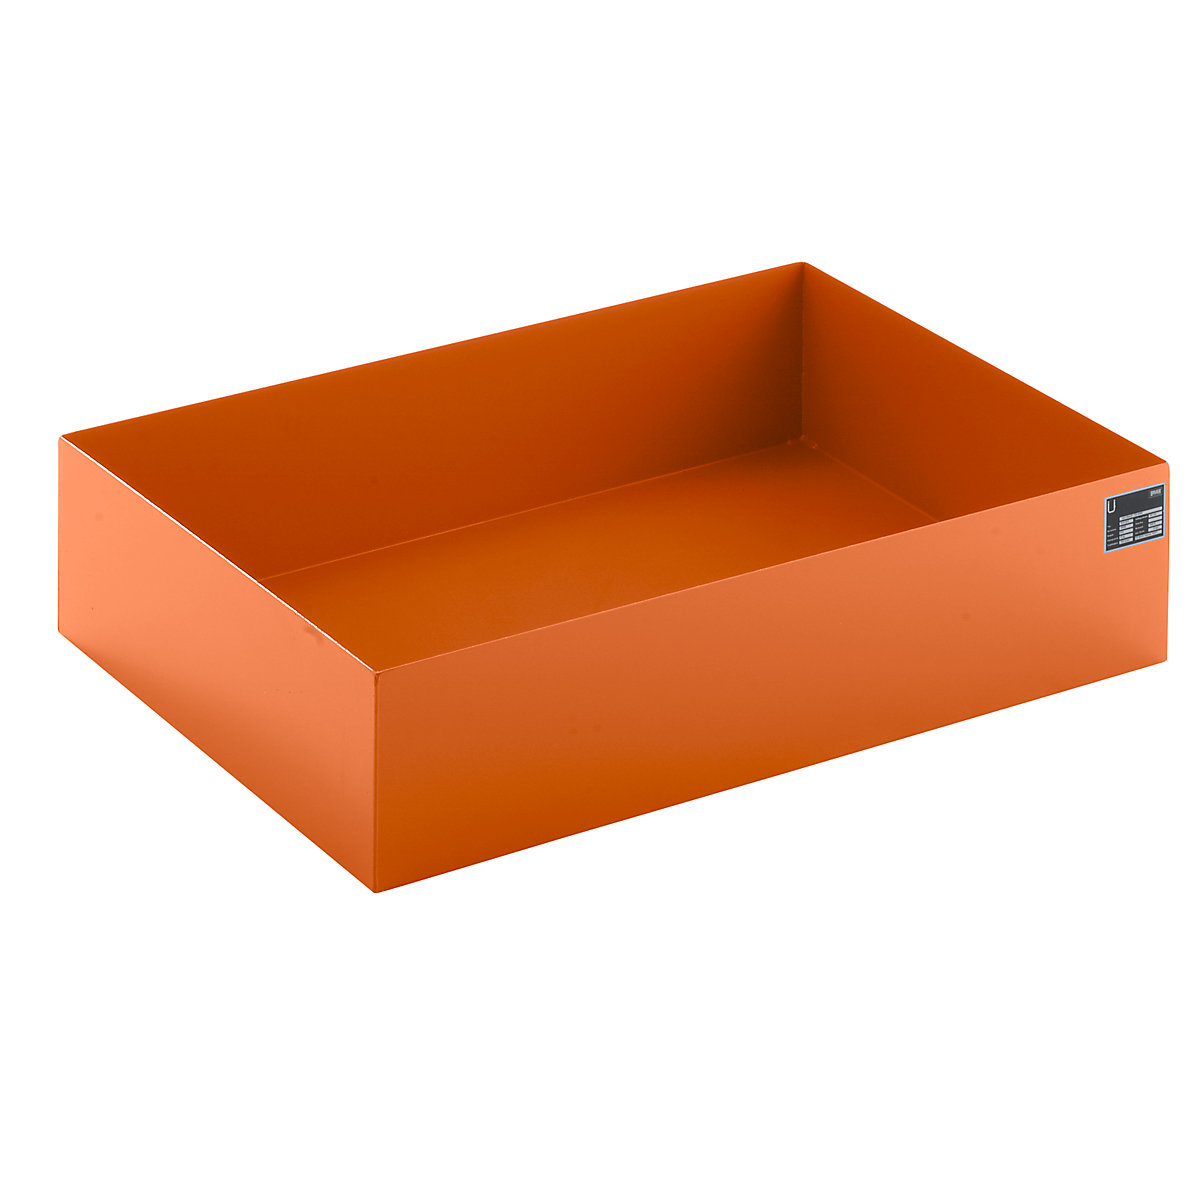 Cuve de rétention pour palette, L x l x h 1200 x 800 x 260 mm, orange RAL 2000-7